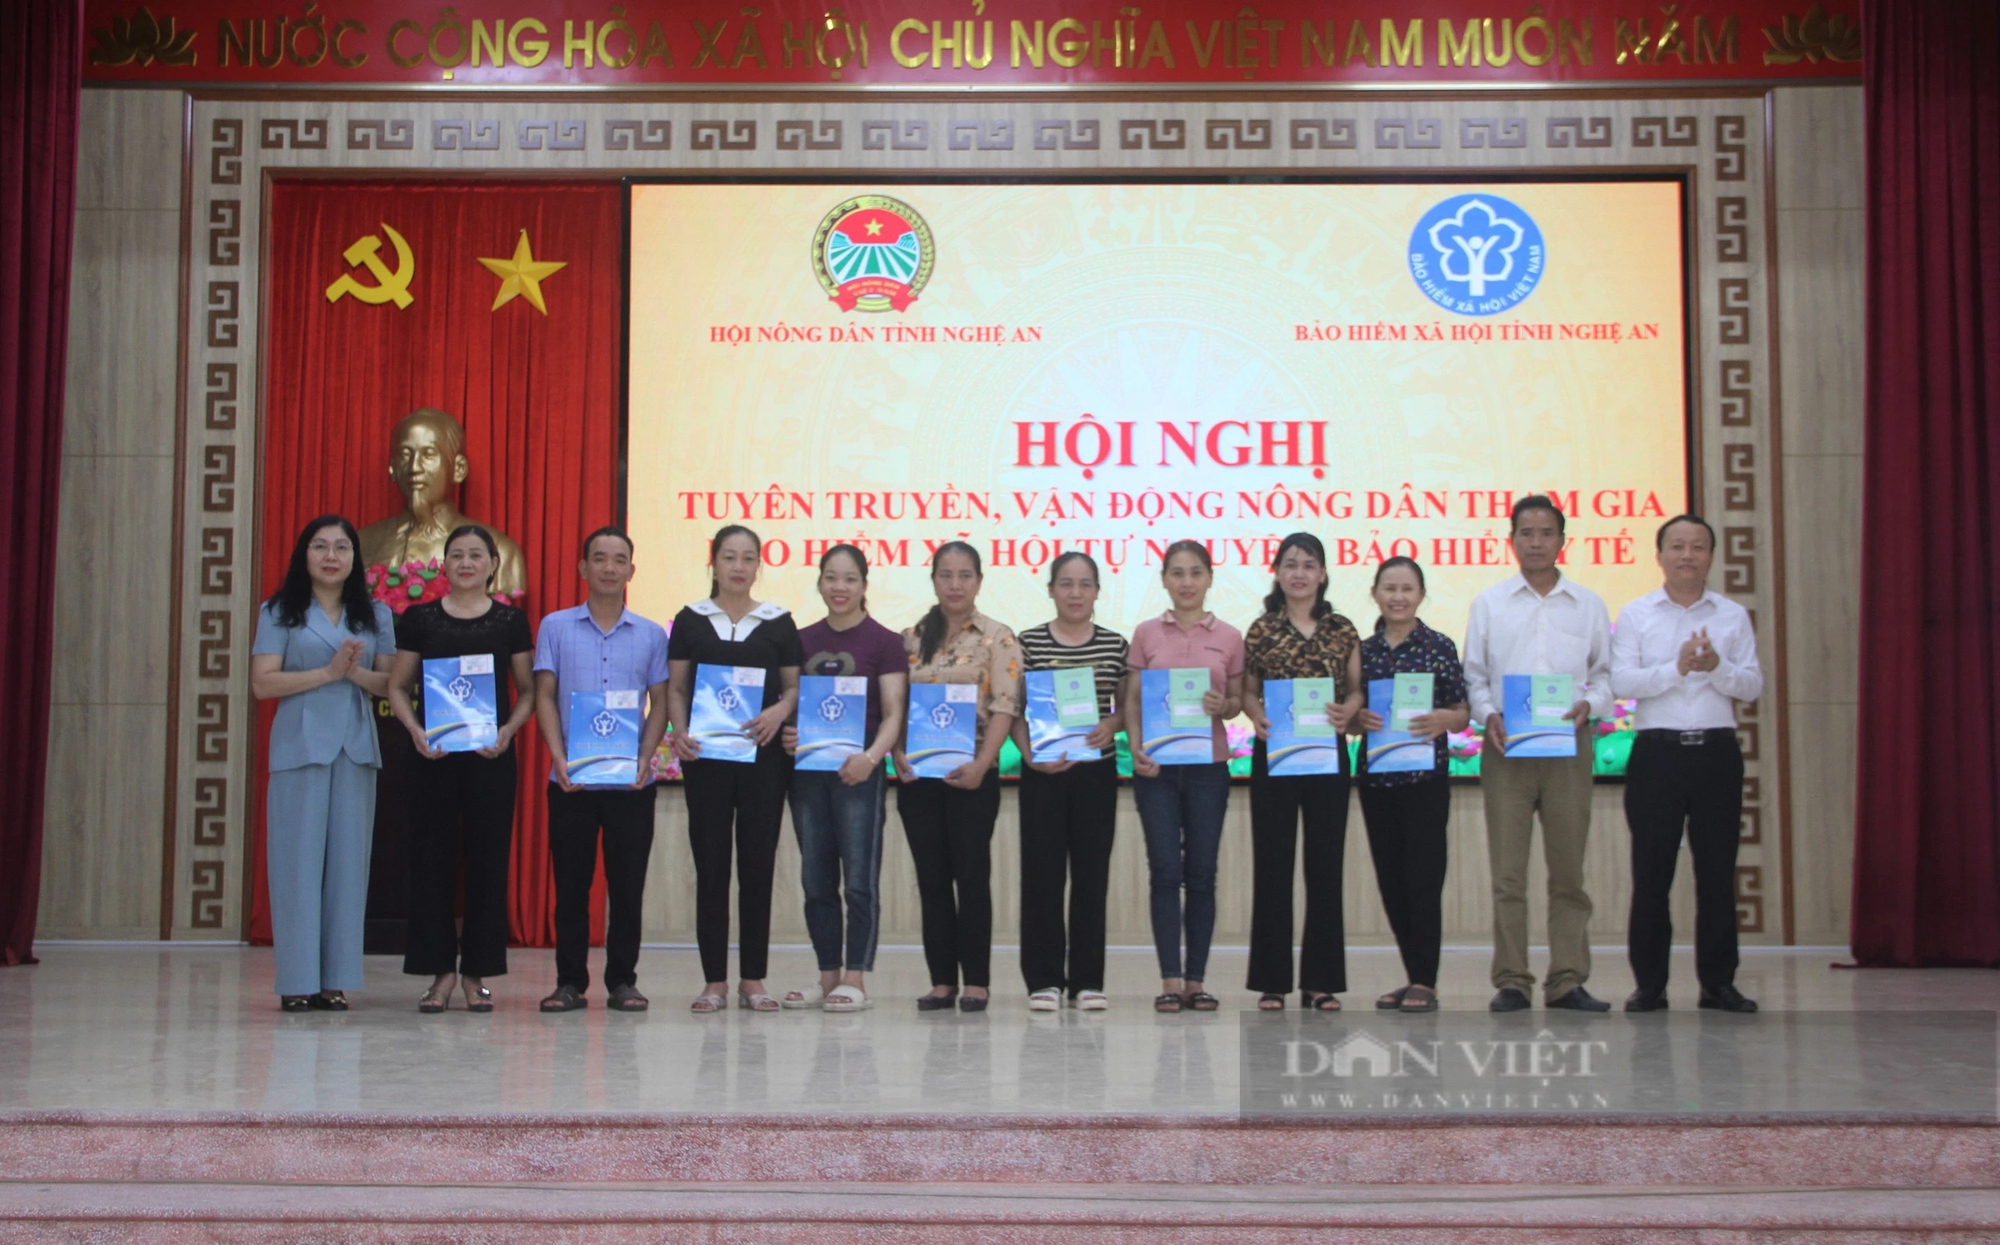 Đẩy mạnh tuyên truyền, vận động nông dân Nghệ An tham gia bảo hiểm y tế, bảo hiểm xã hội tự nguyện- Ảnh 7.